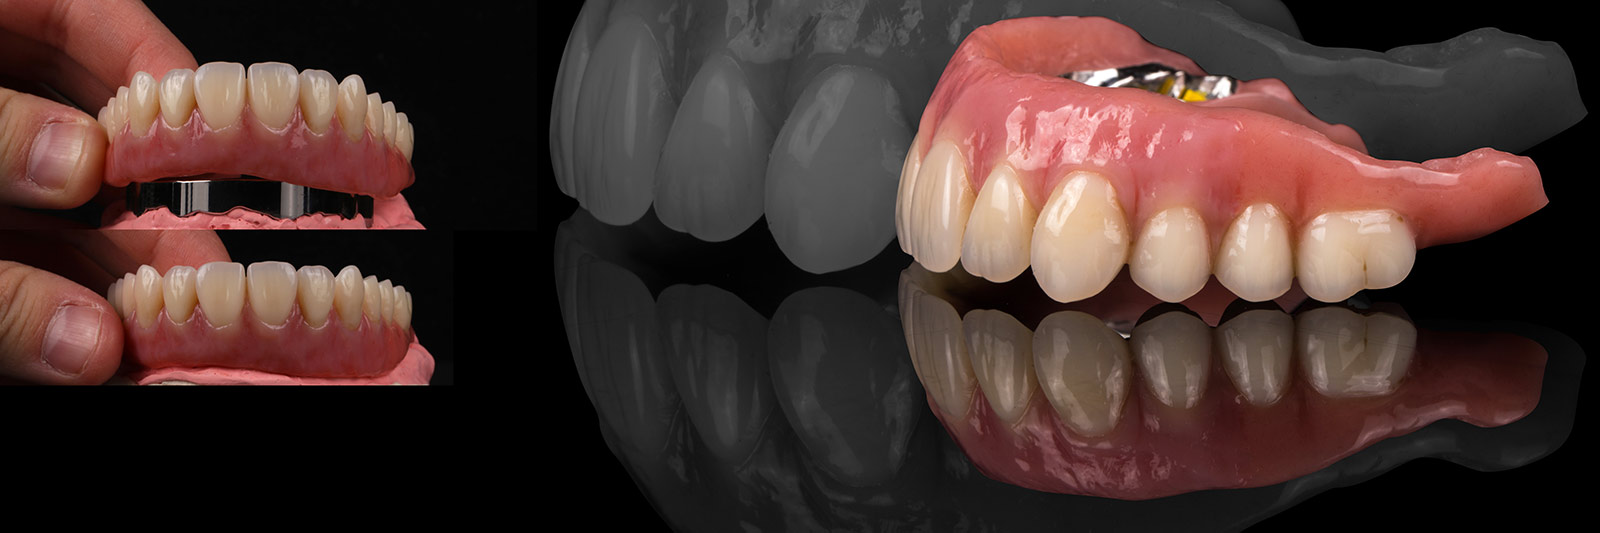 Unterschiedliche Ansichten einer Zahnprothese